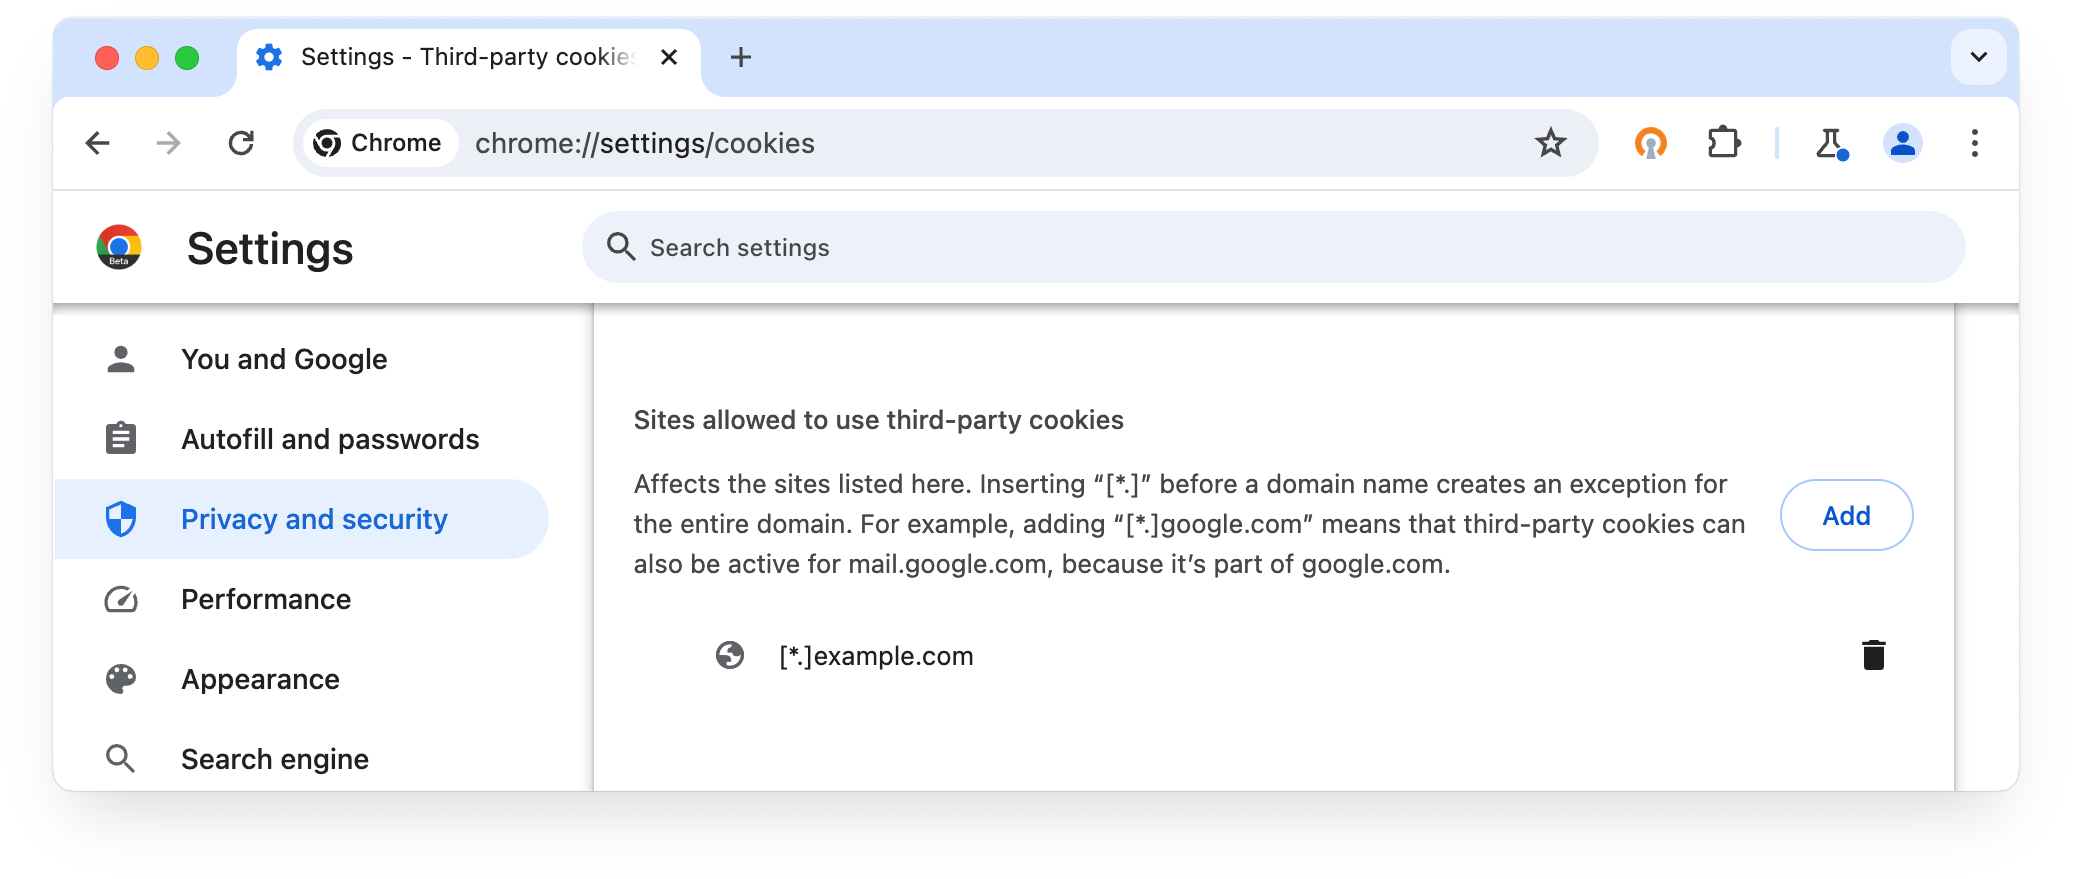 chrome://settings/cookies: Situs diizinkan menggunakan cookie pihak ketiga